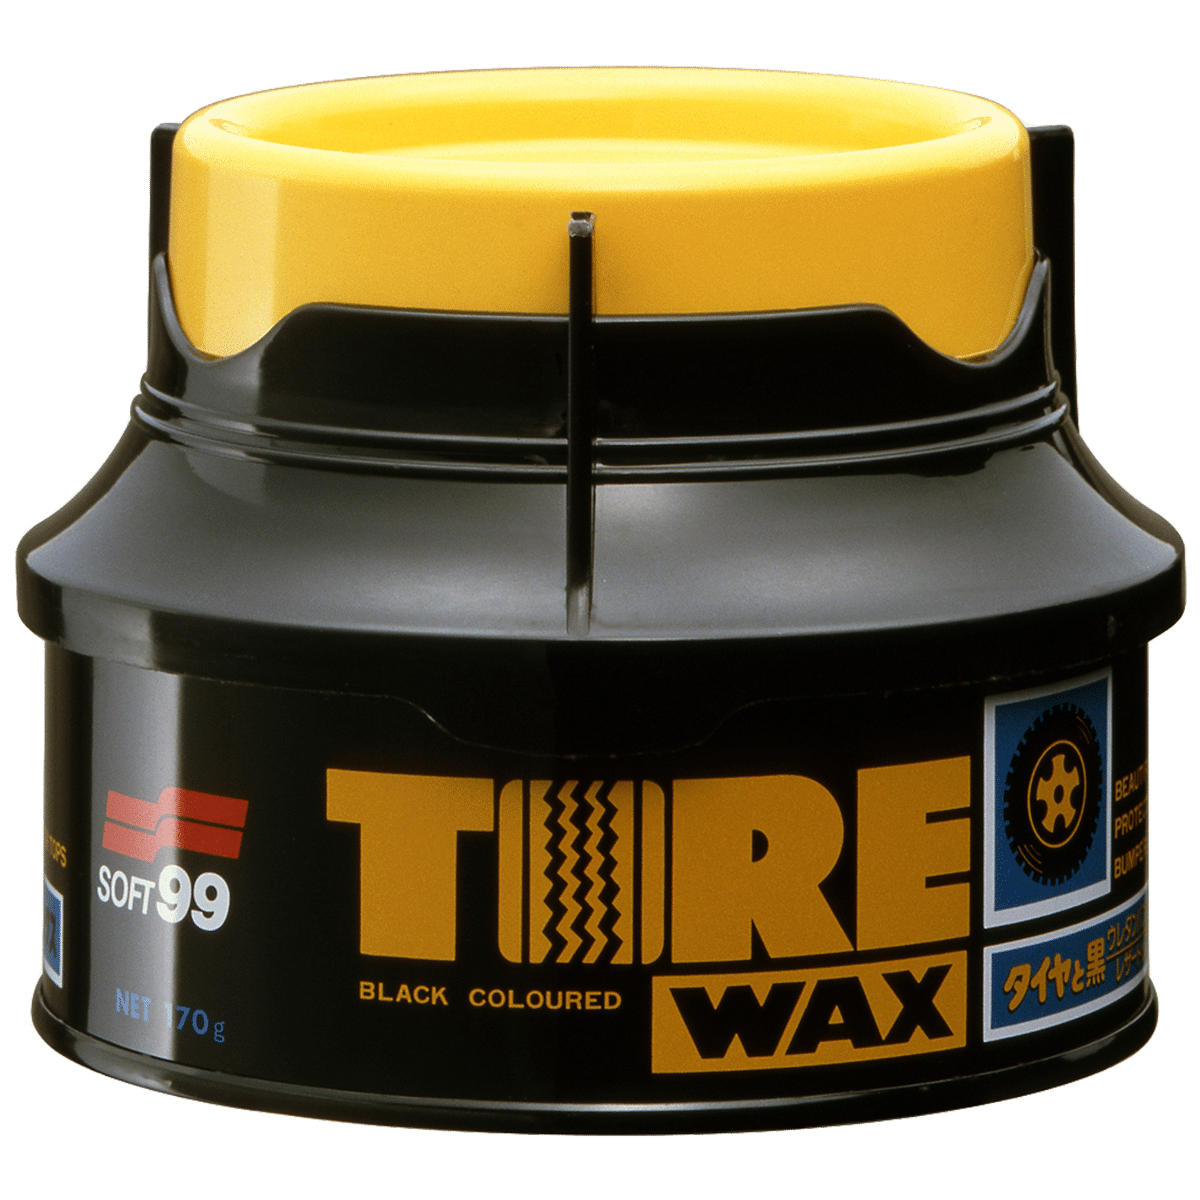 SOFT99 Tire Black Wax 170g Stały Wosk do Zabezpieczania Opon